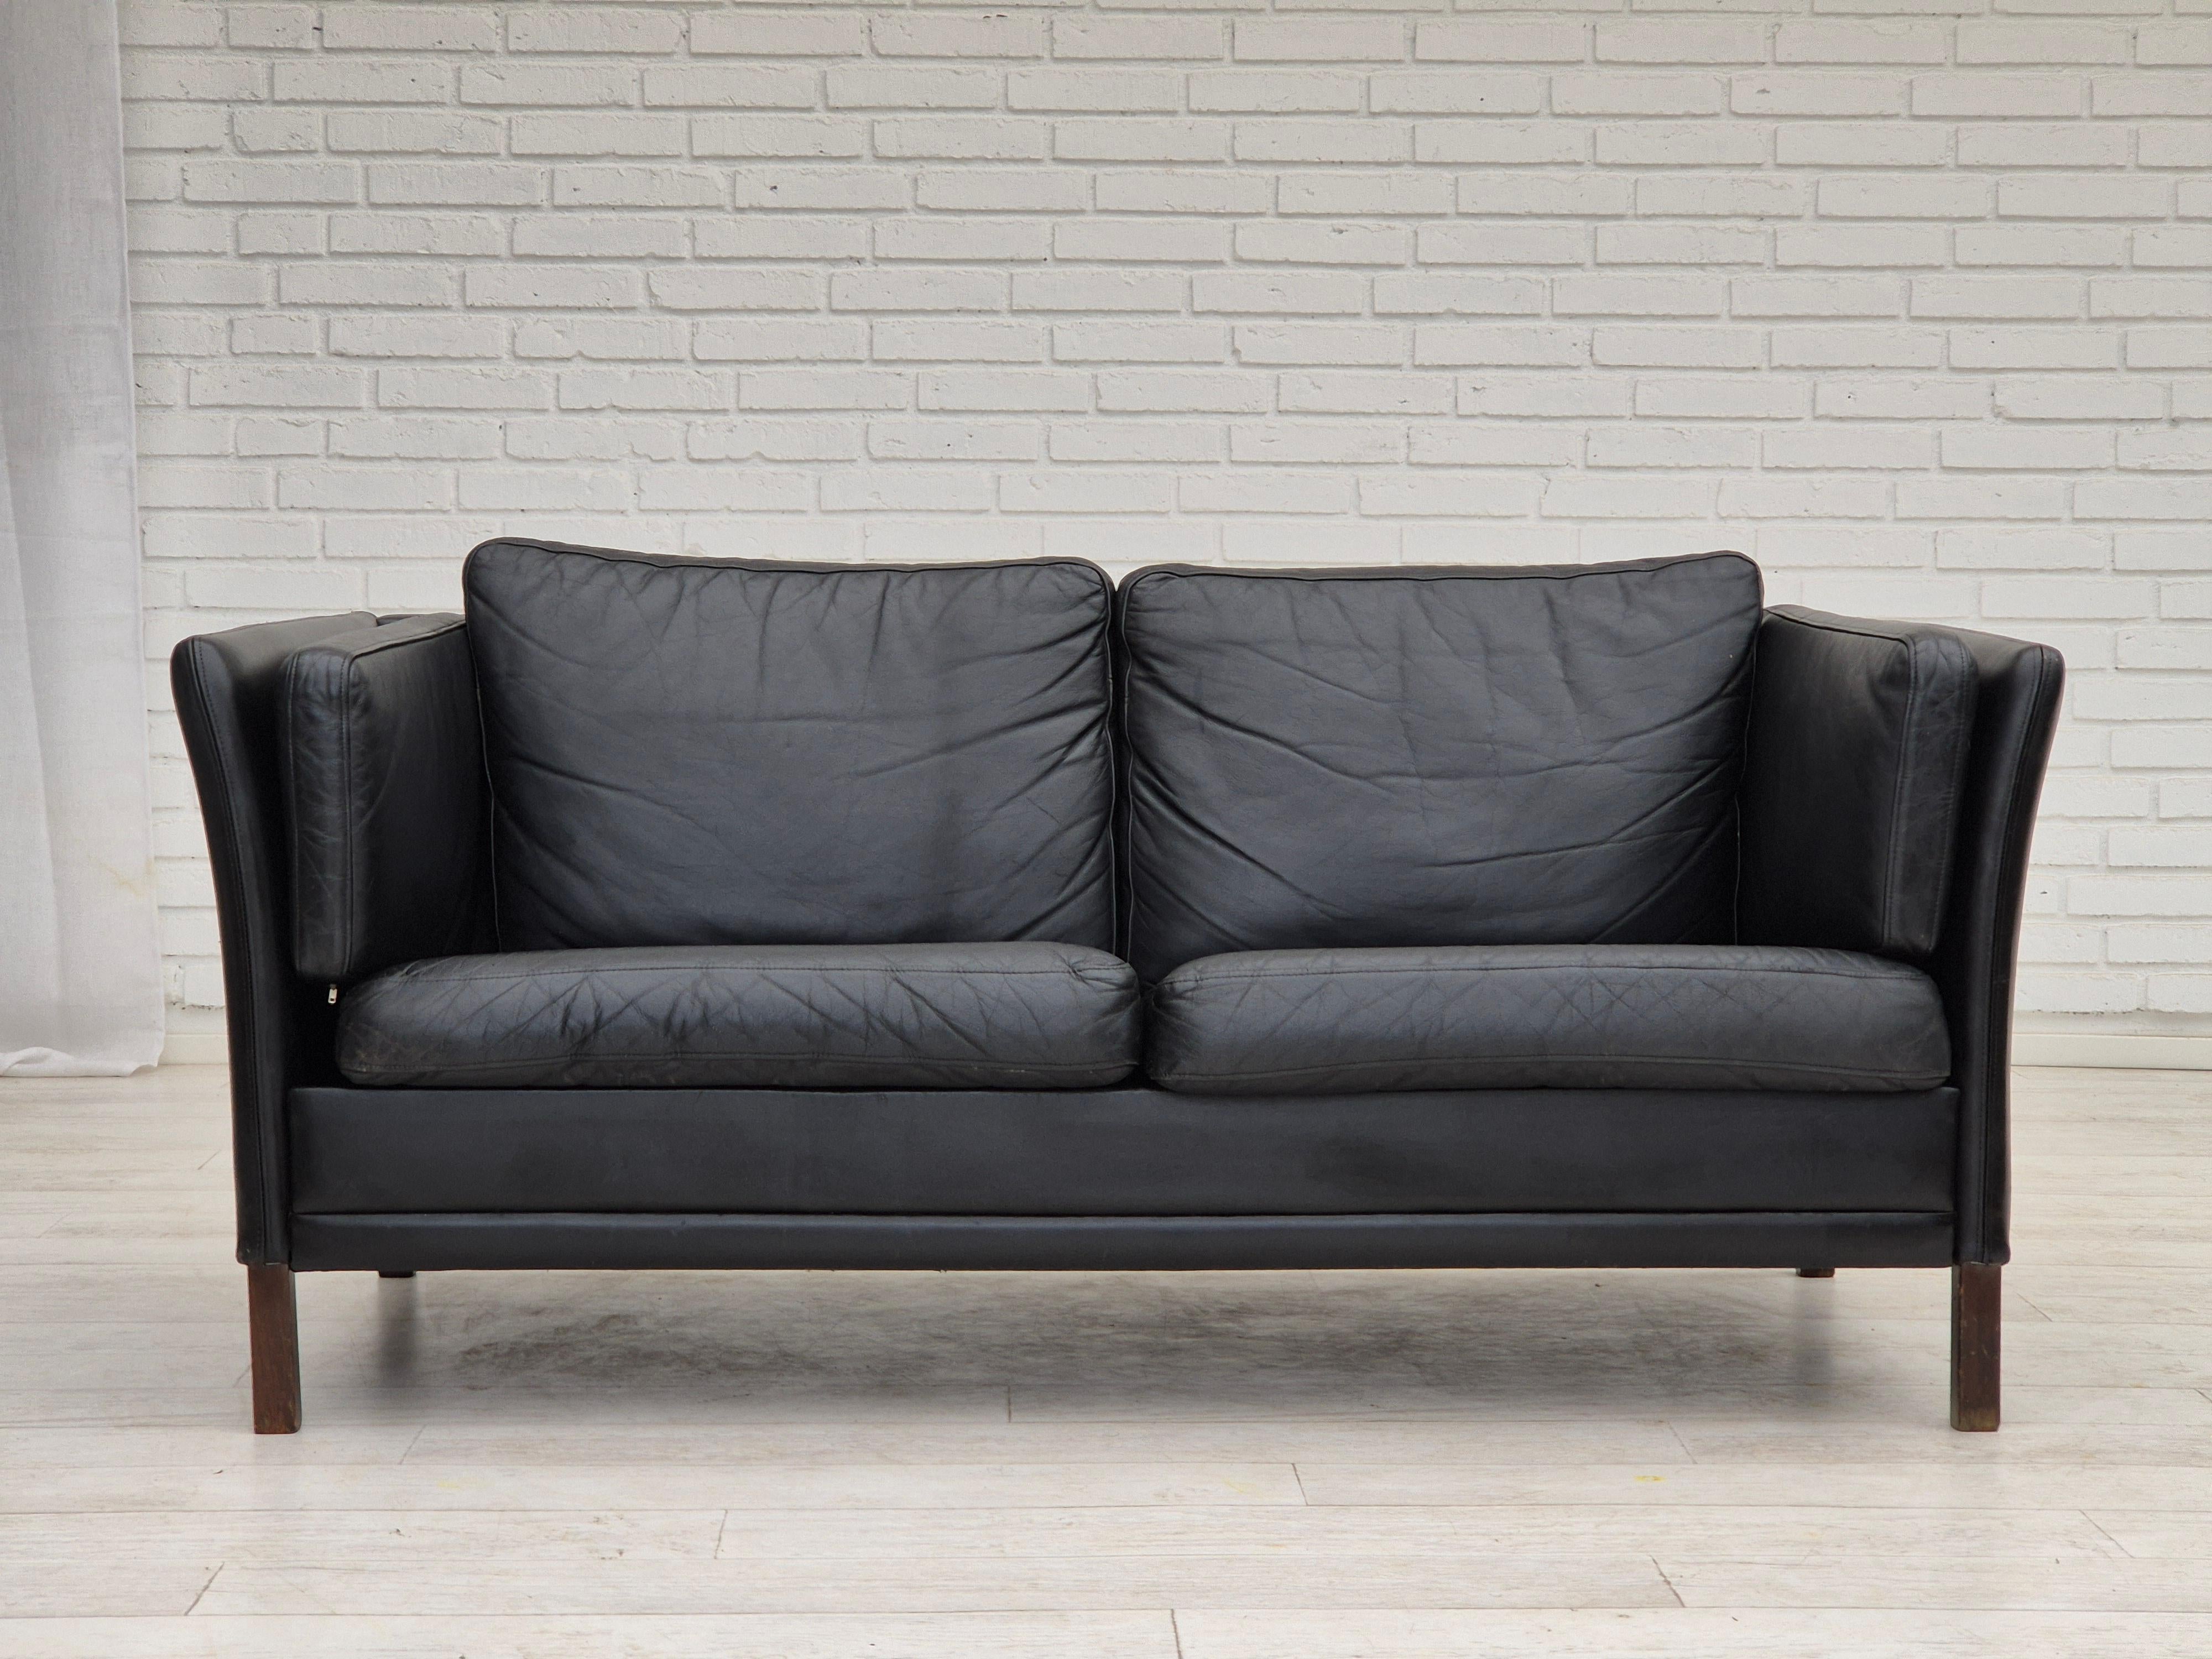 1960er Jahre, dänisches Design von Mogens Hansen. 2-Sitzer-Sofa in sehr gutem Originalzustand: keine Gerüche und keine Flecken. Schwarzes Leder, Beine aus Eschenholz. Hergestellt von einem dänischen Möbelhersteller etwa in den 1960-65er Jahren.